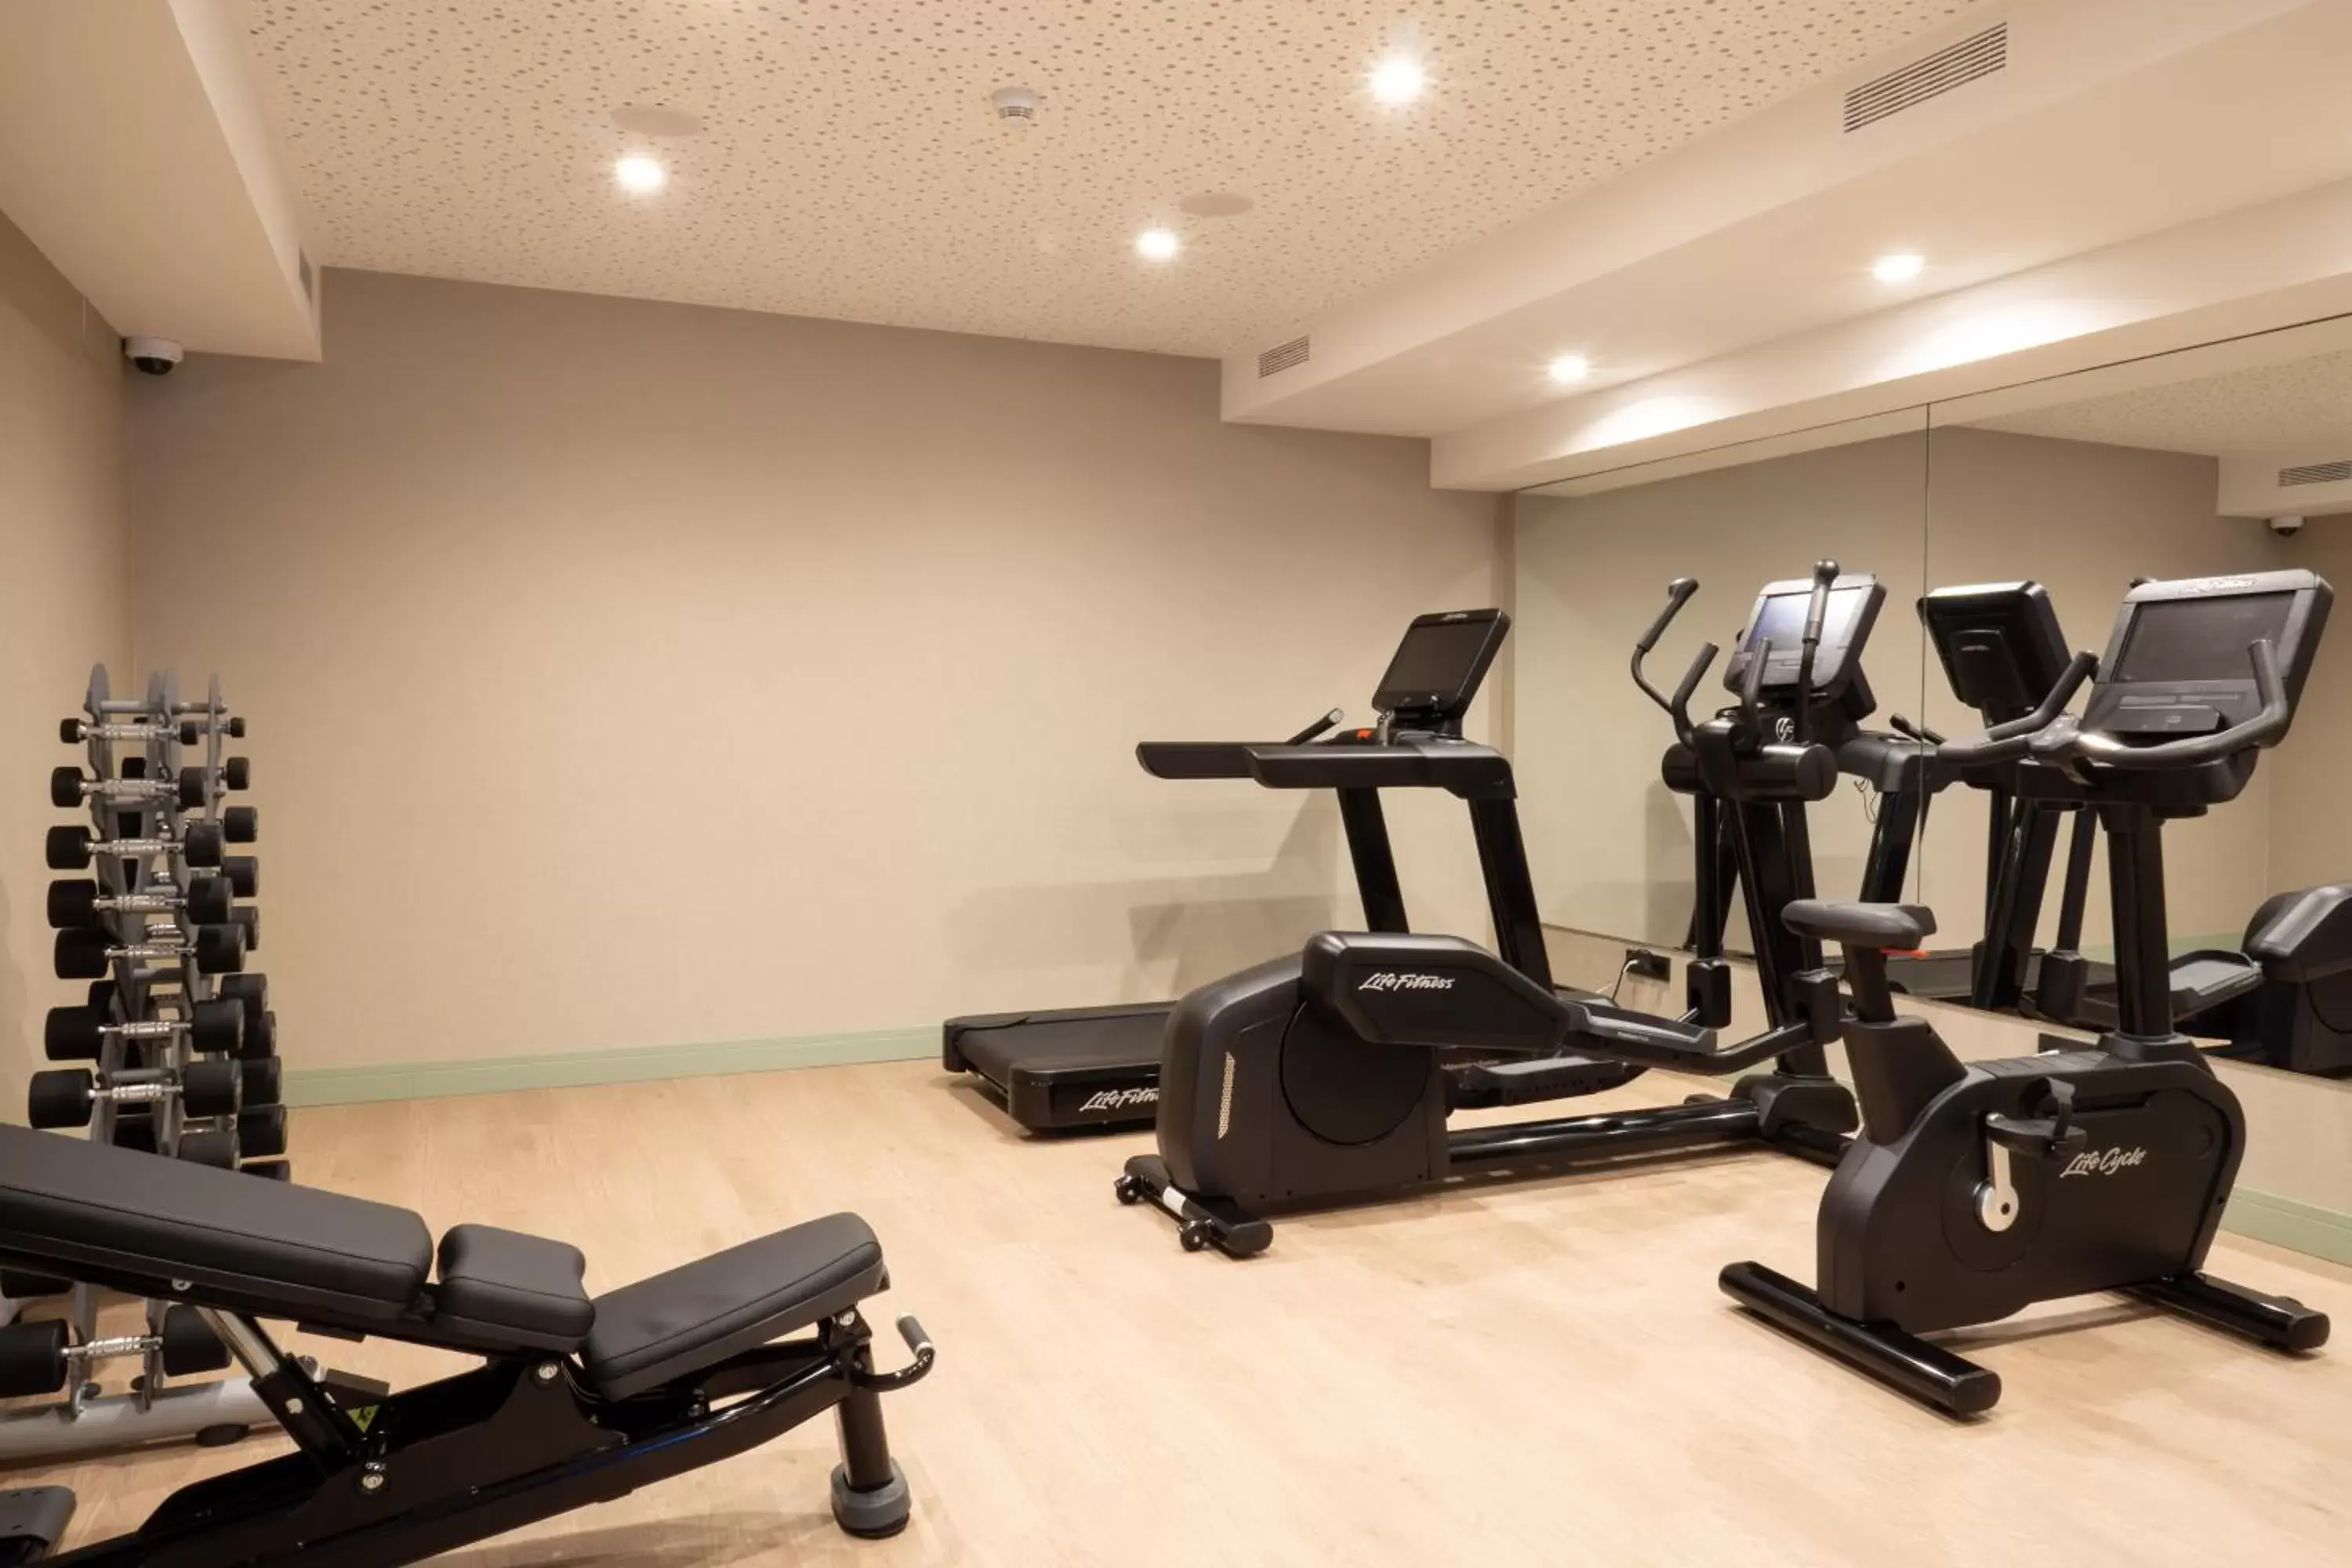 Fitness centre/facilities, Fitness Center/Facilities in Catalonia La Maquinista